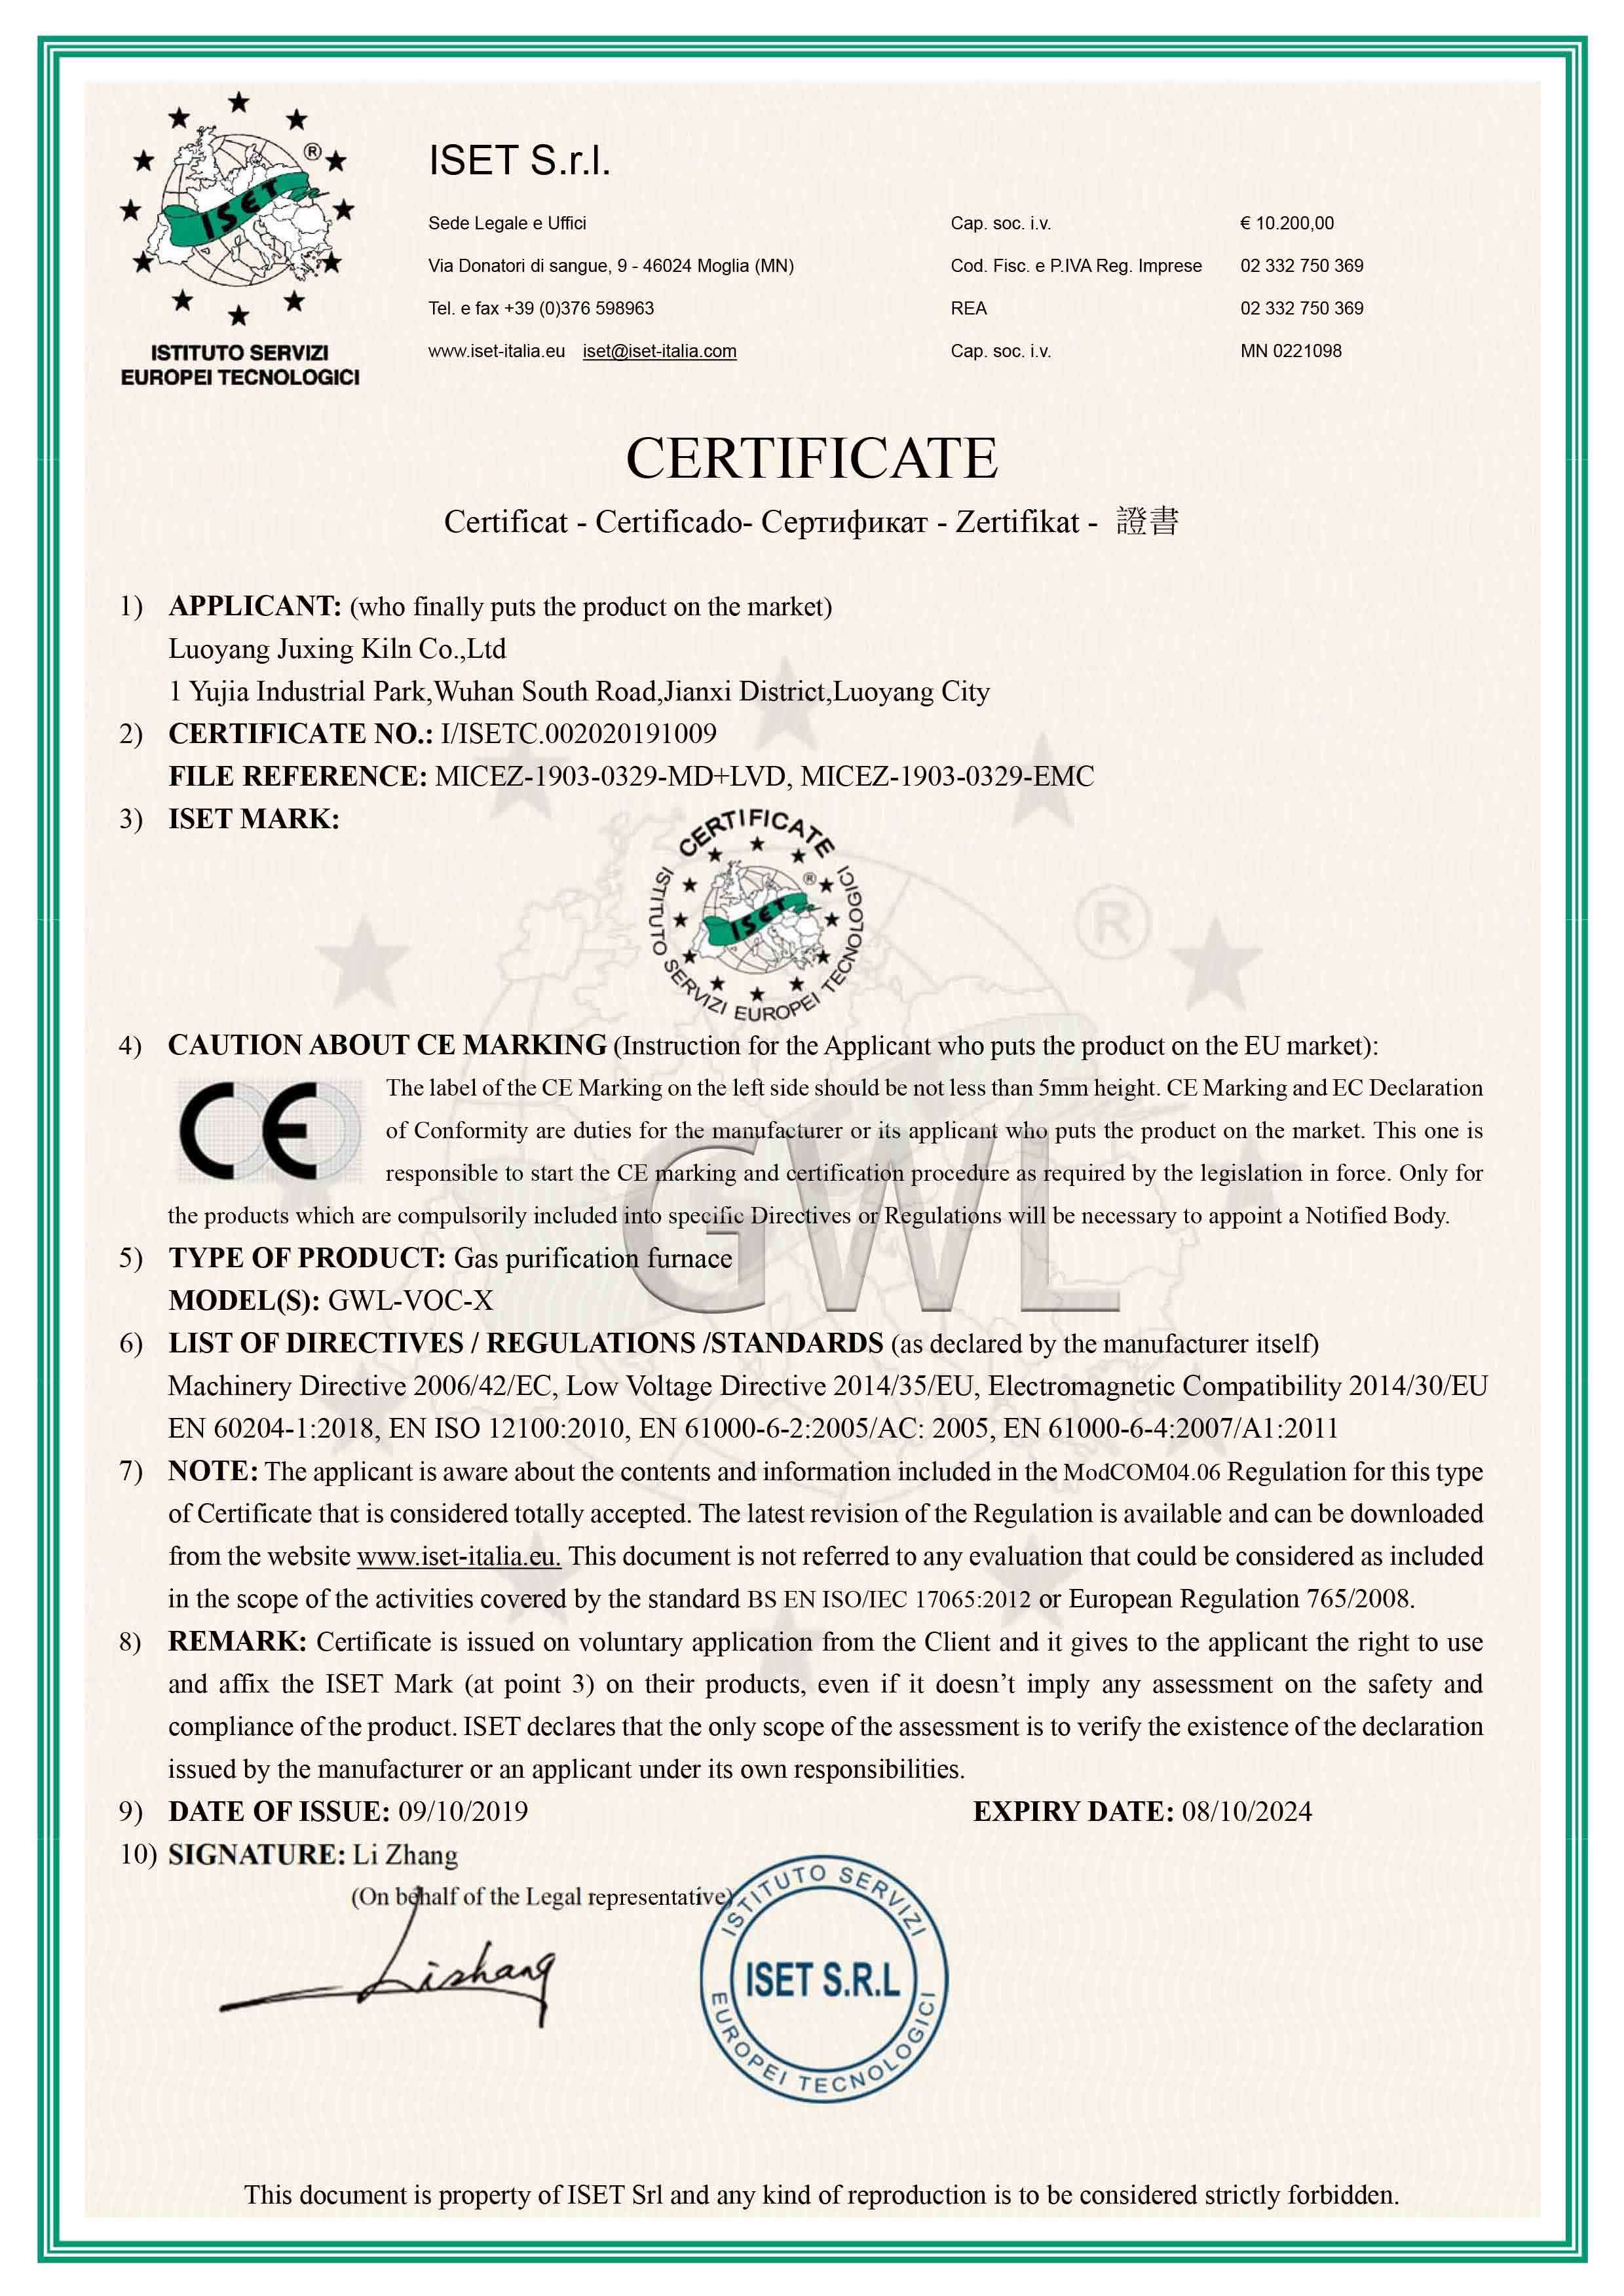 炬星GWL高温节能尾气净化炉欧盟认证CE证书